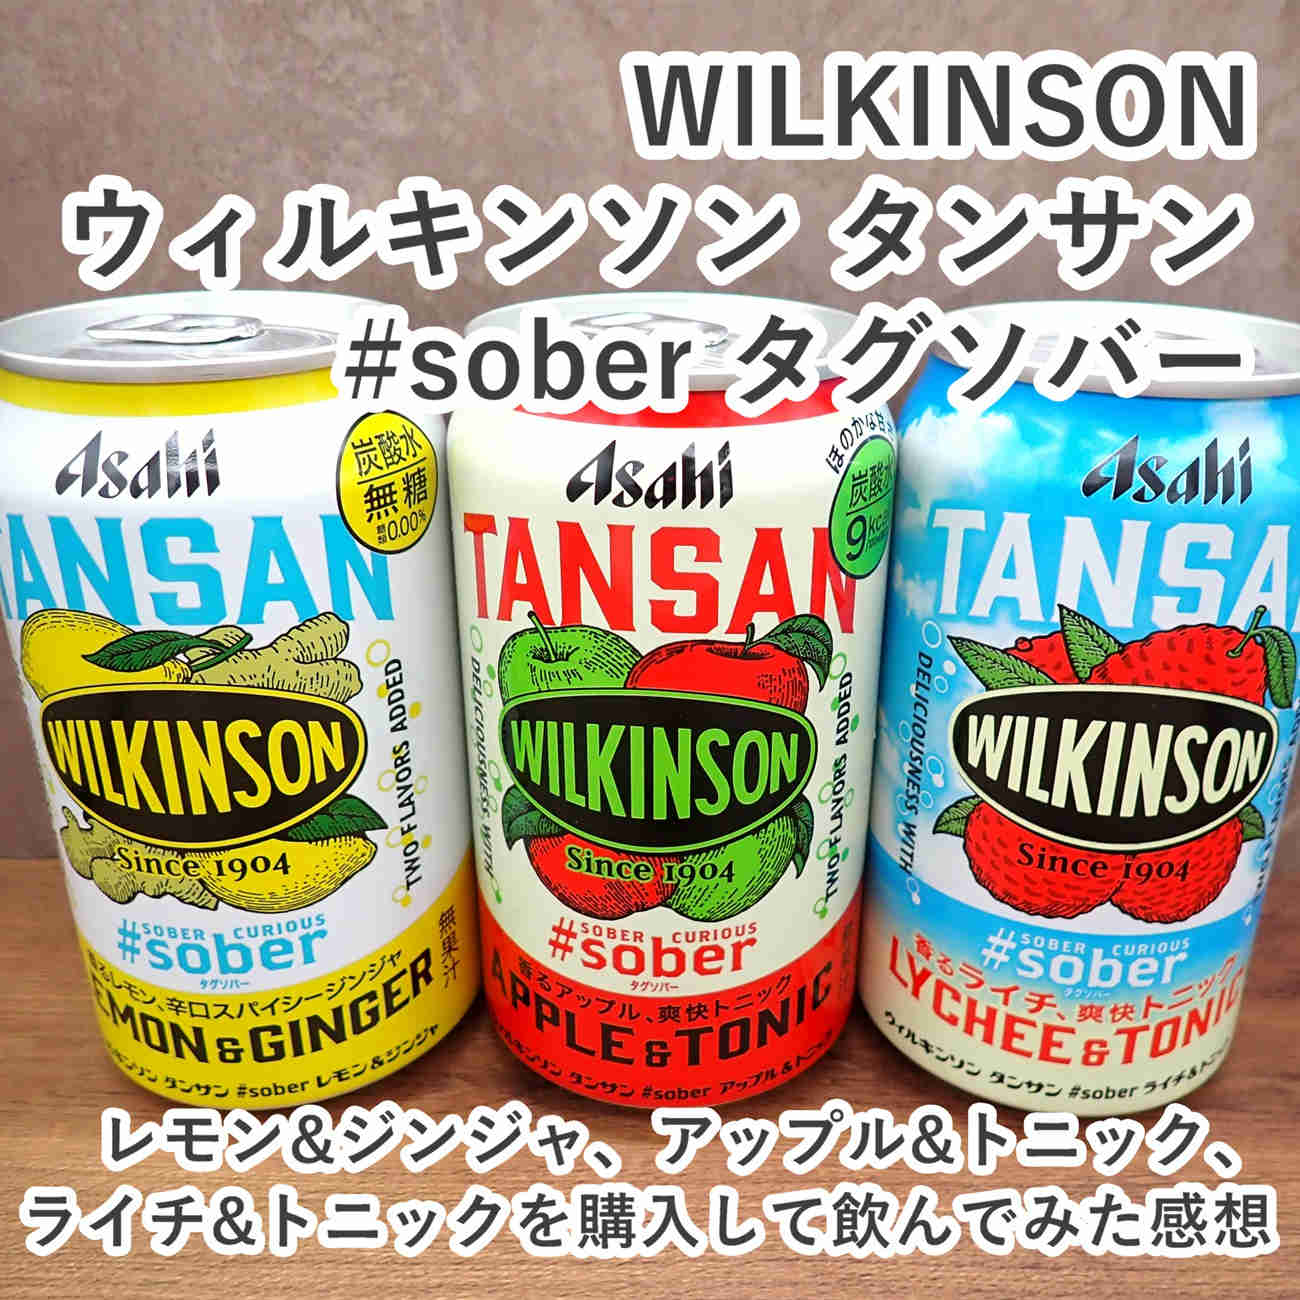 アサヒ飲料 ウィルキンソン WILKINSON タンサン ＃sober タグソバー レモン＆ジンジャとアップル＆トニックとライチ＆トニックを飲んだ感想をレビューしました。